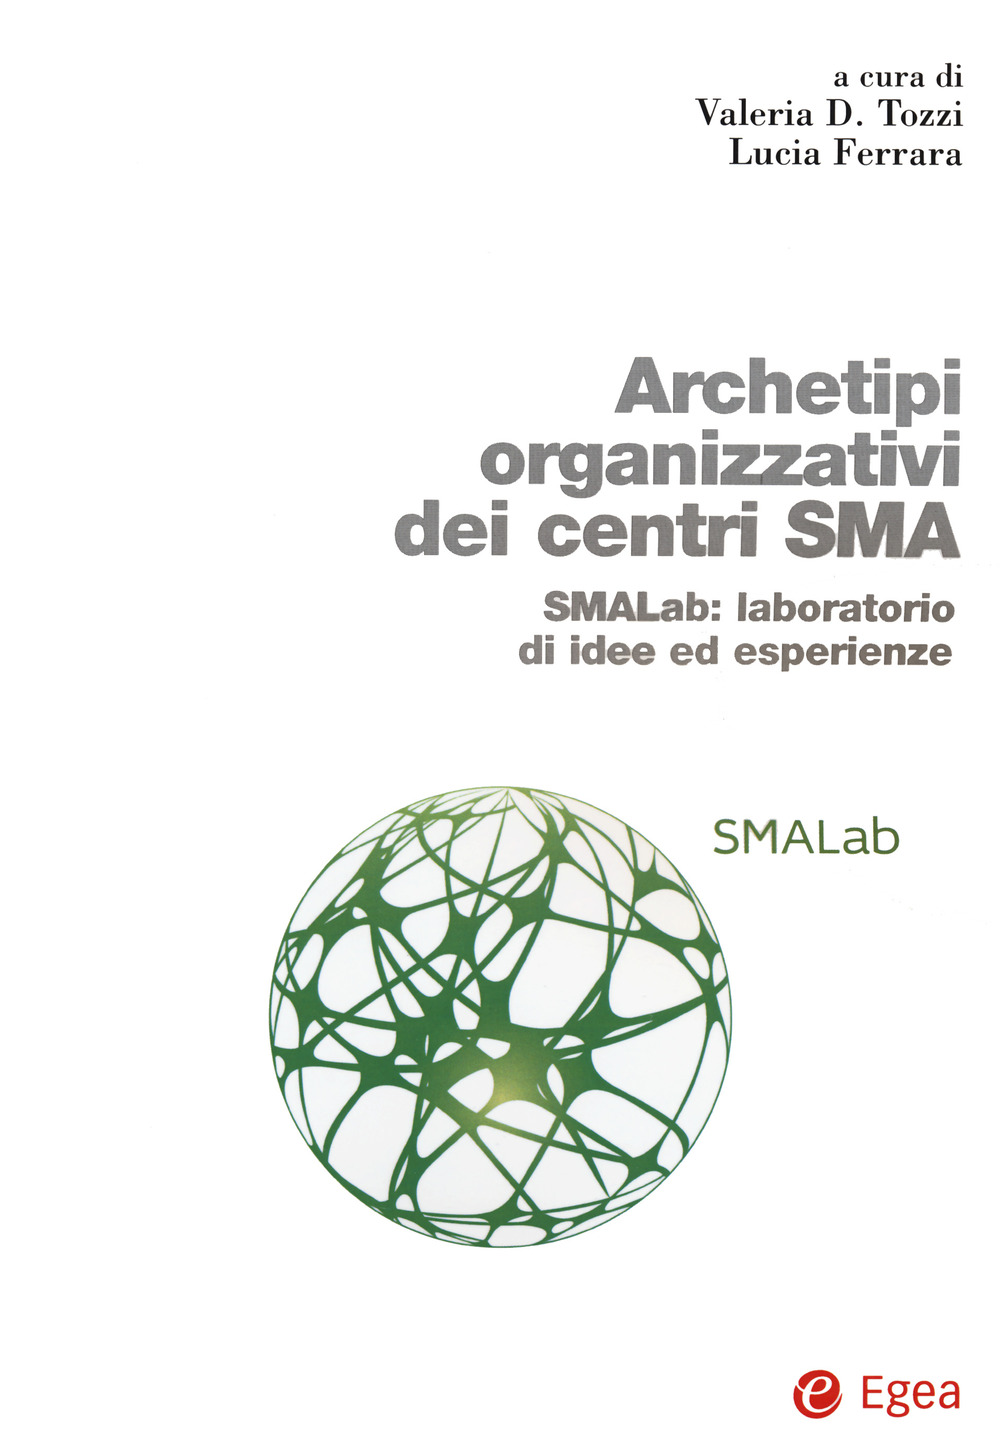 Archetipi organizzativi centri SMA. SMALab: laboratorio di idee ed esperienze